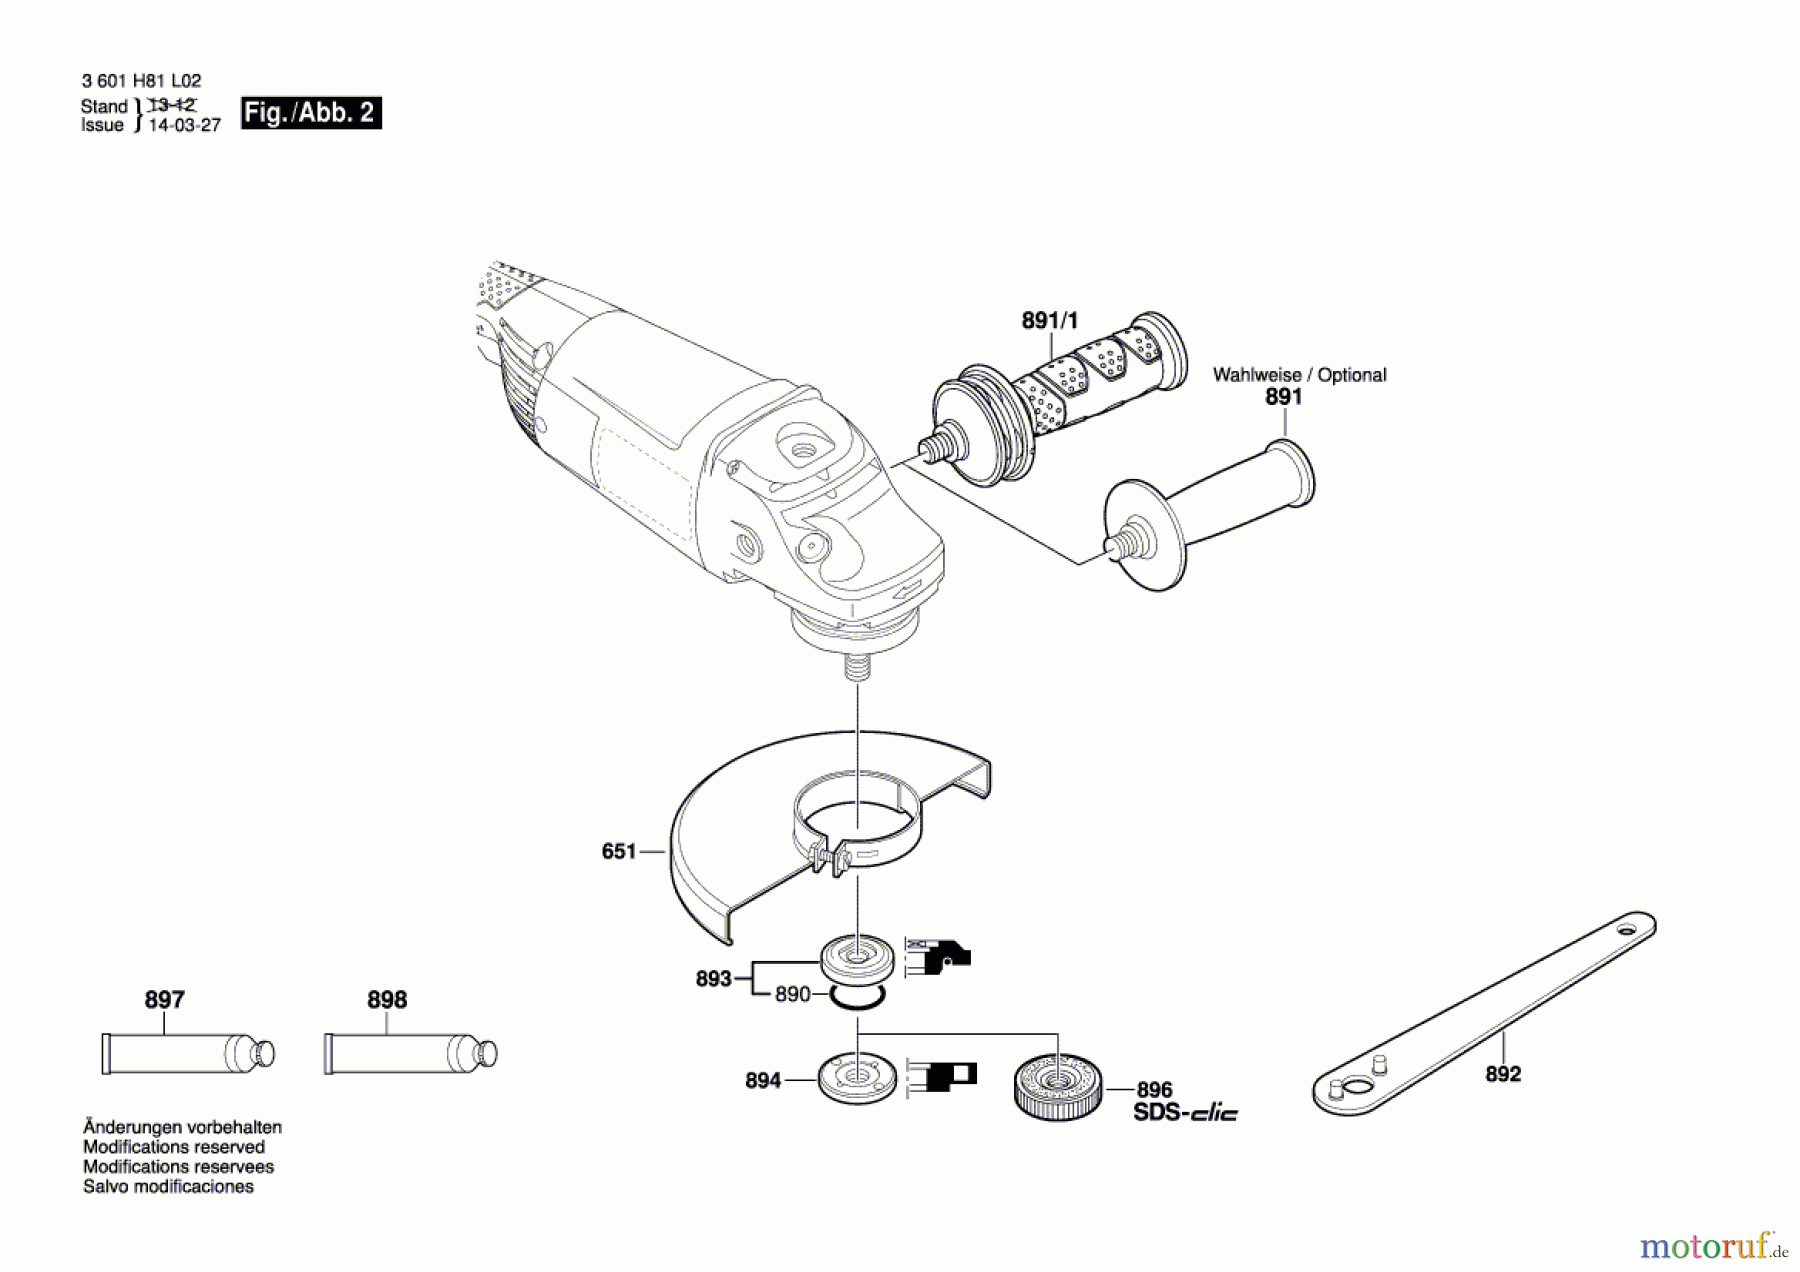  Bosch Werkzeug Winkelschleifer GWS 2030 H Seite 2